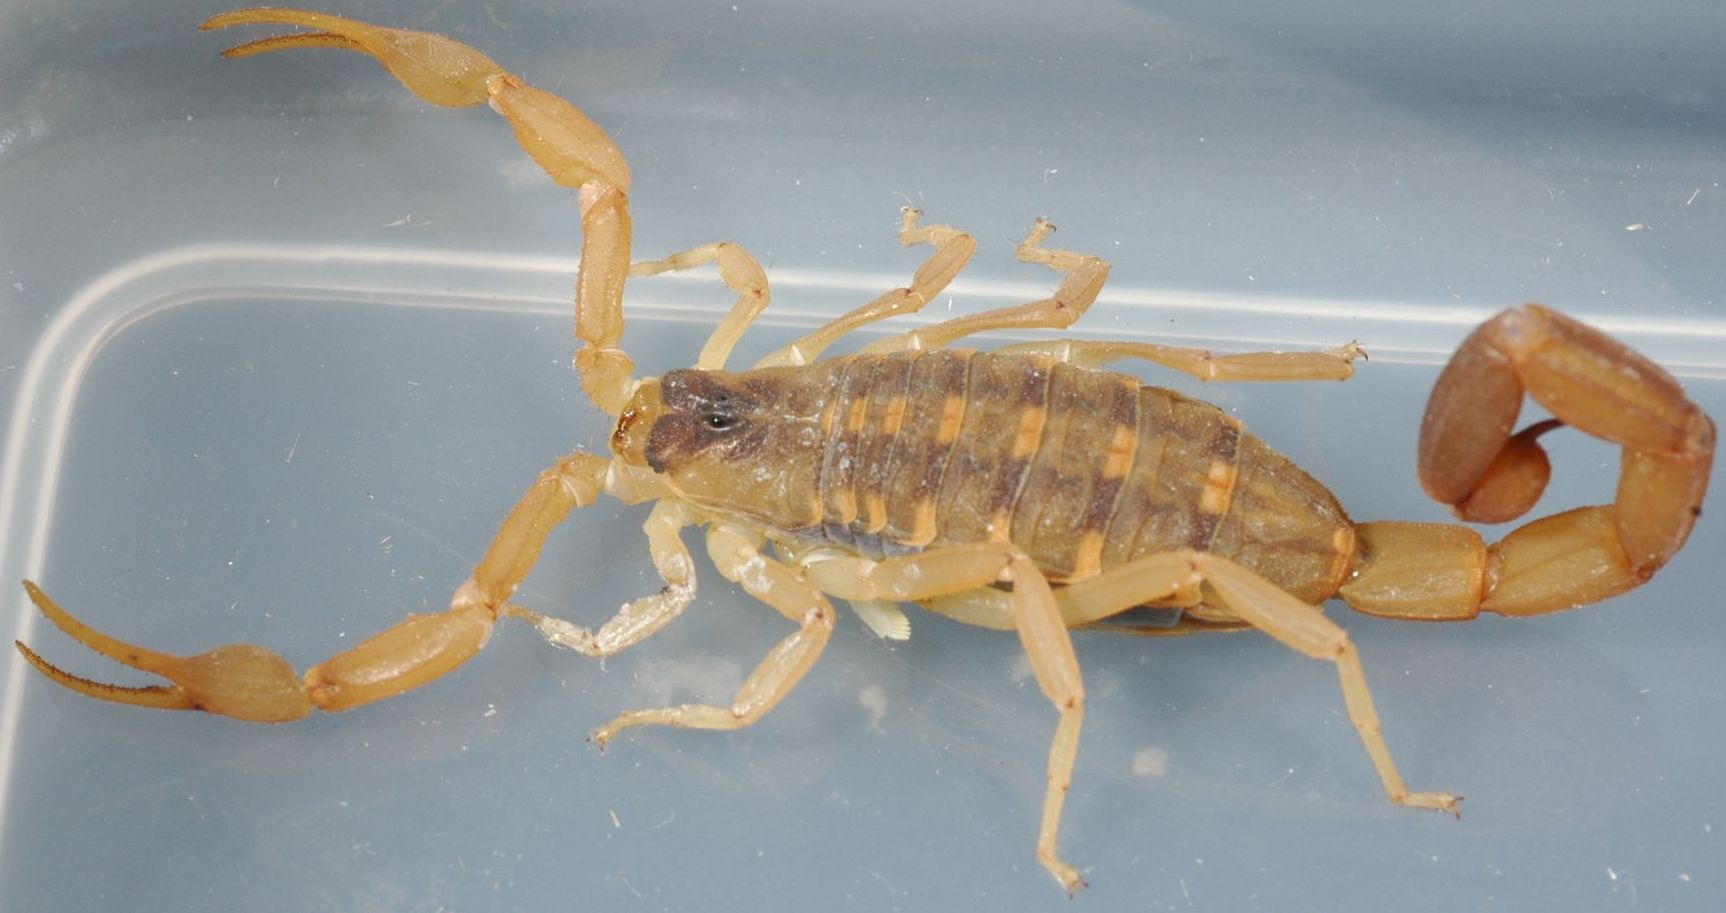 Centruroides vittatus, à l’image, est un scorpion commun dans le sud des États-Unis. © Charles &amp; Clint, Flickr, cc by 2.0